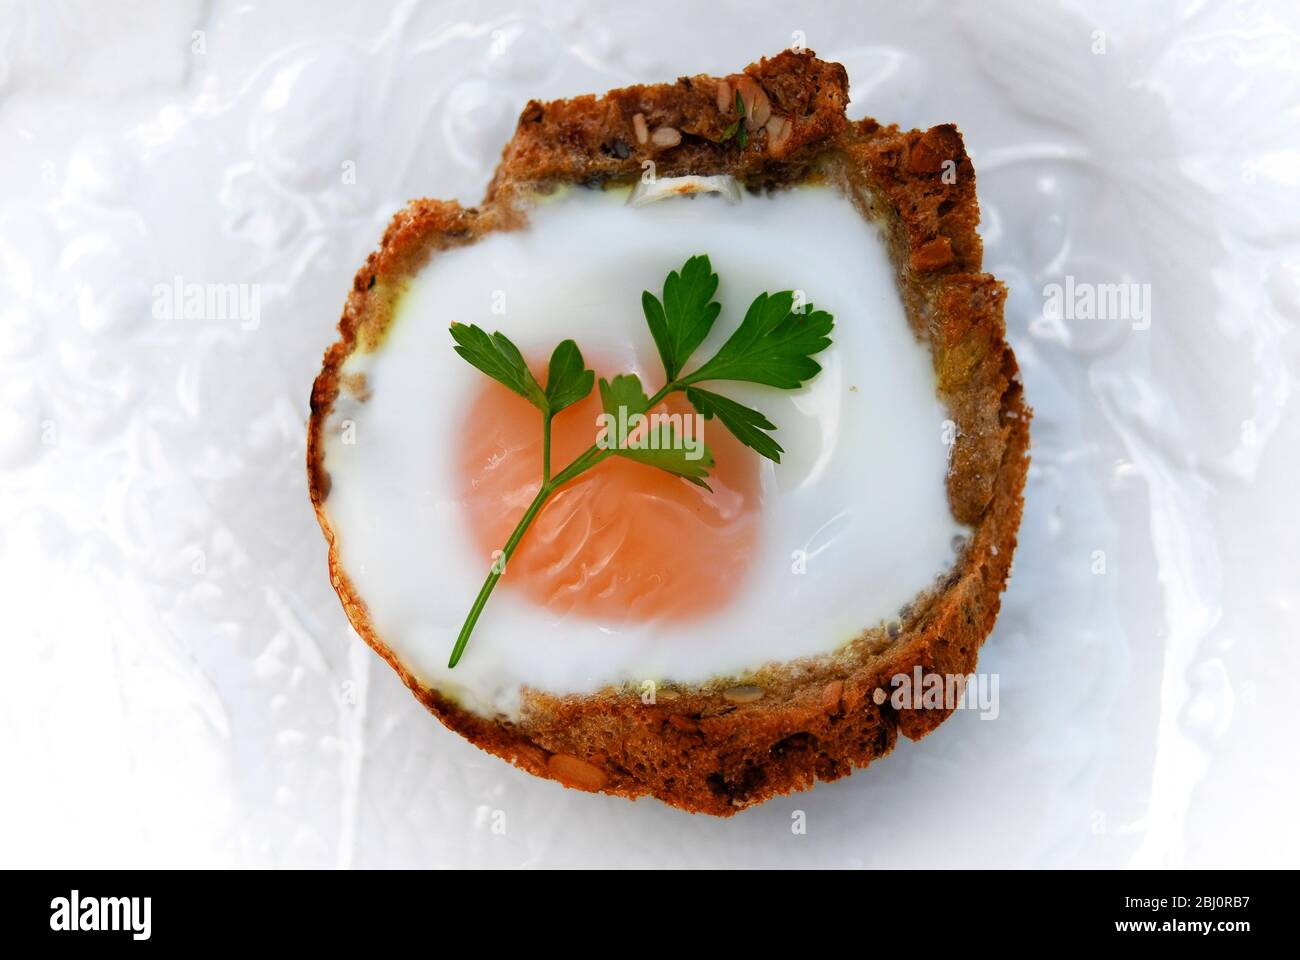 Ein Ei, das in einem Fall von gebuttertem Brot gebacken wurde, das auf Muffin-Form geschnitten wurde, garniert mit flacher Petersilie - Stockfoto